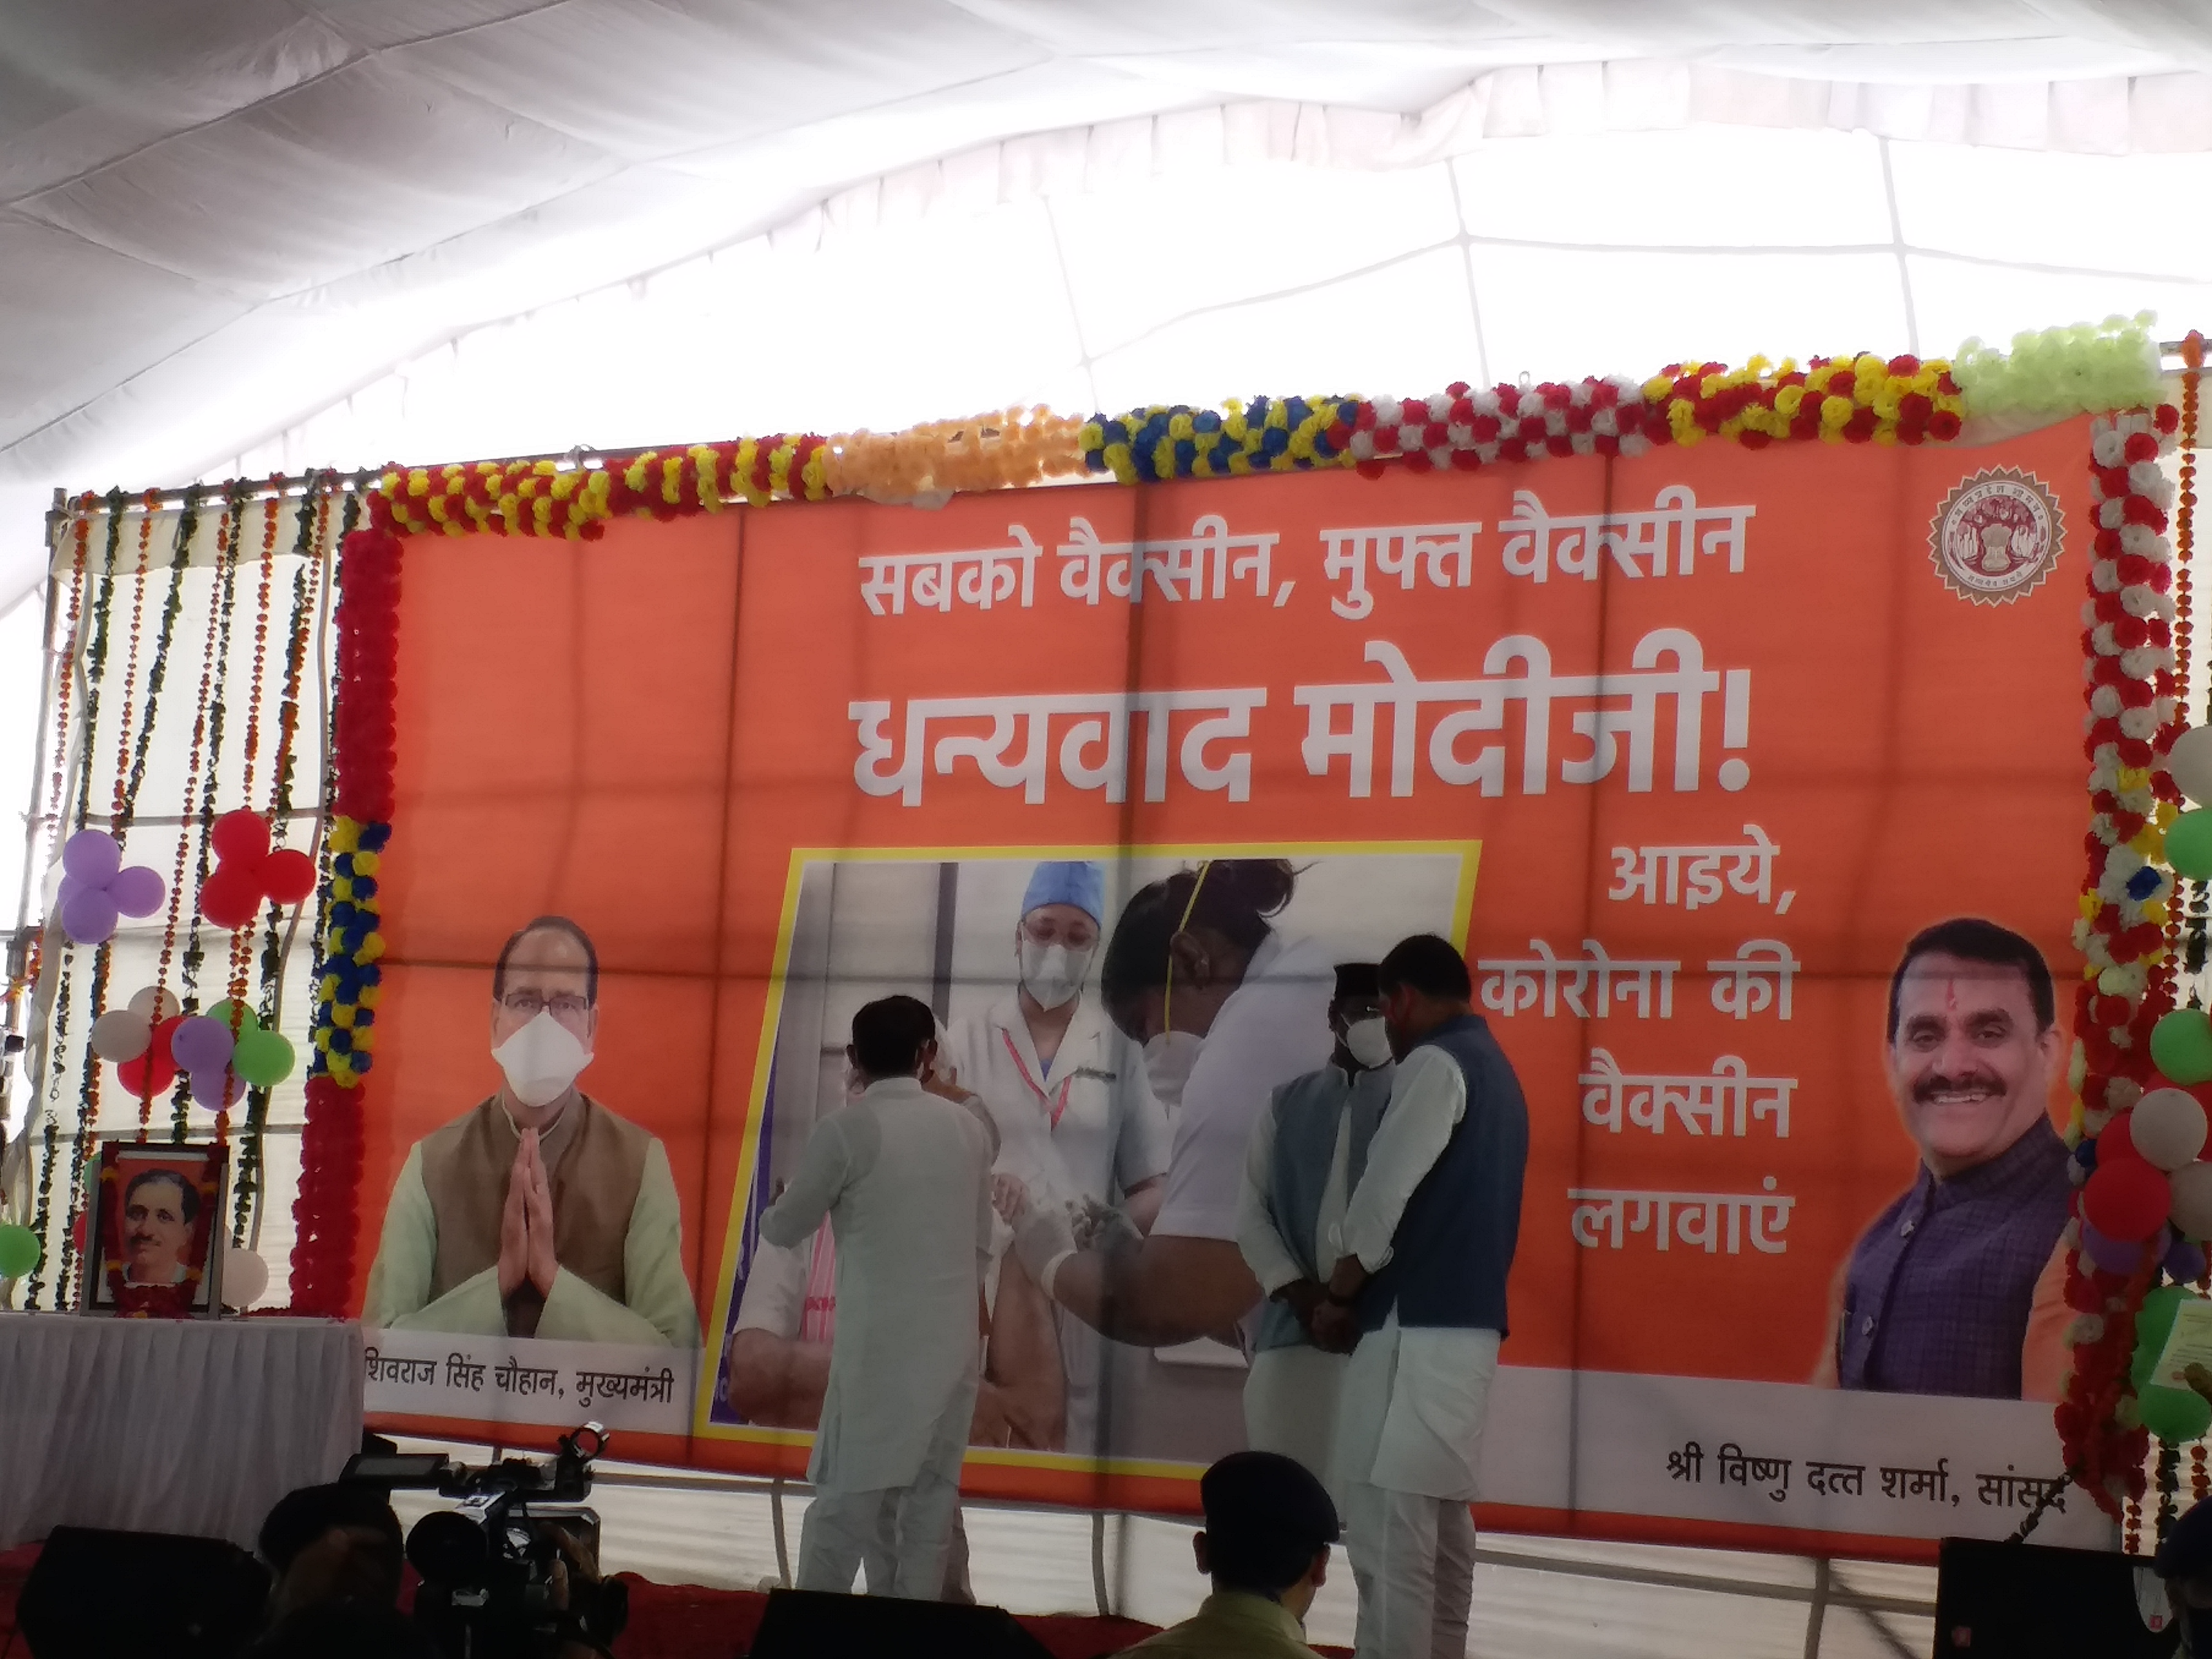 CM reached Bhopal's Anna Nagar slum